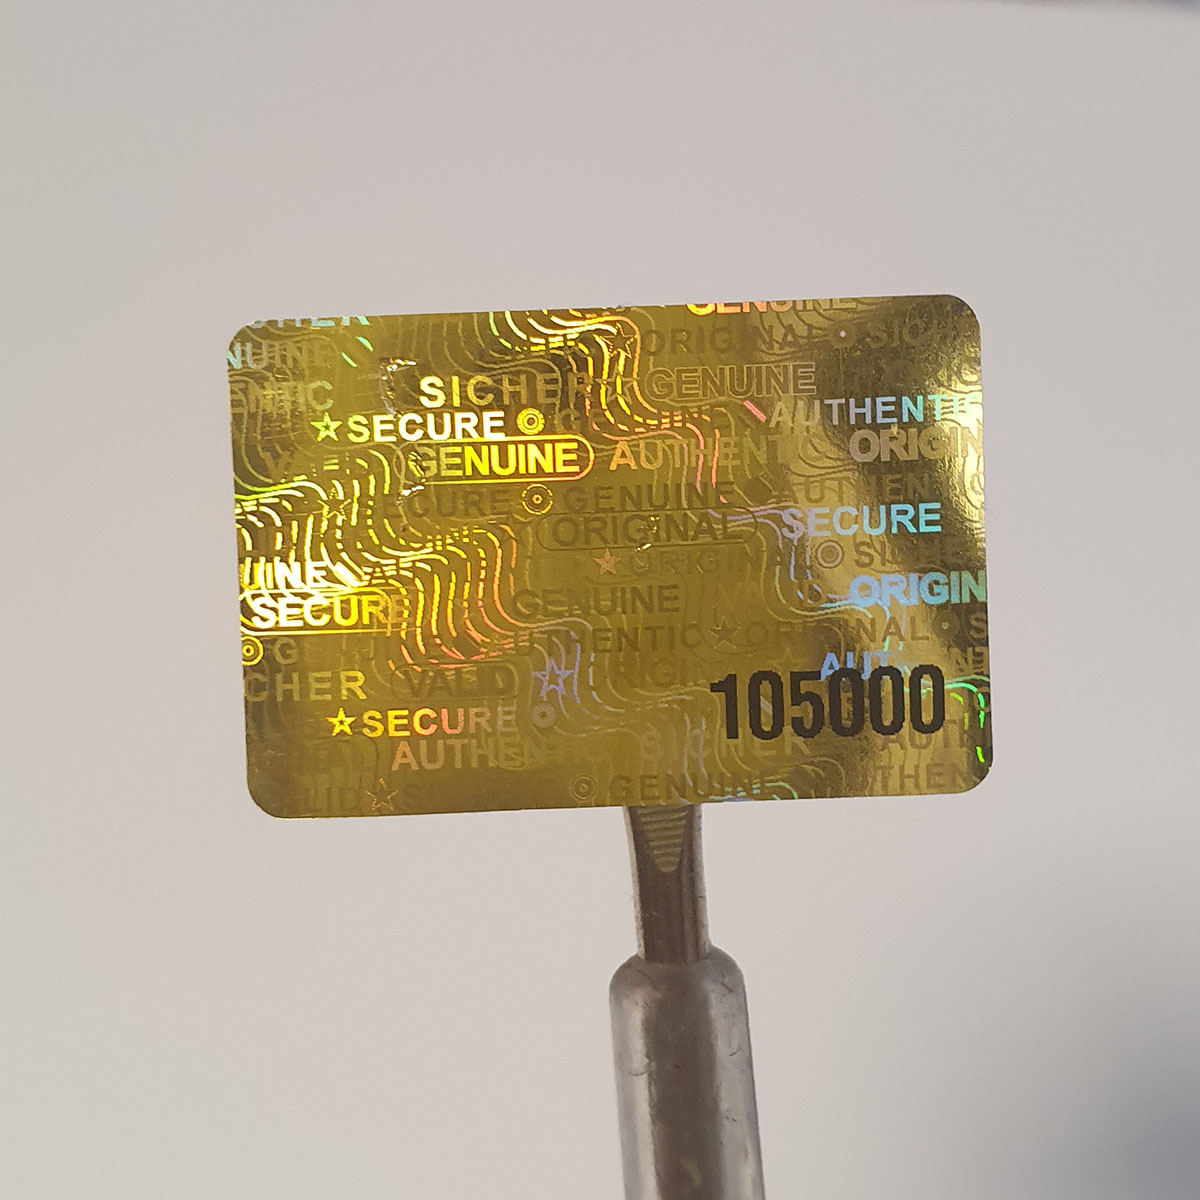 "Sicher" 3D Hologramm Sicherheitssiegel 30x20 mm Gold